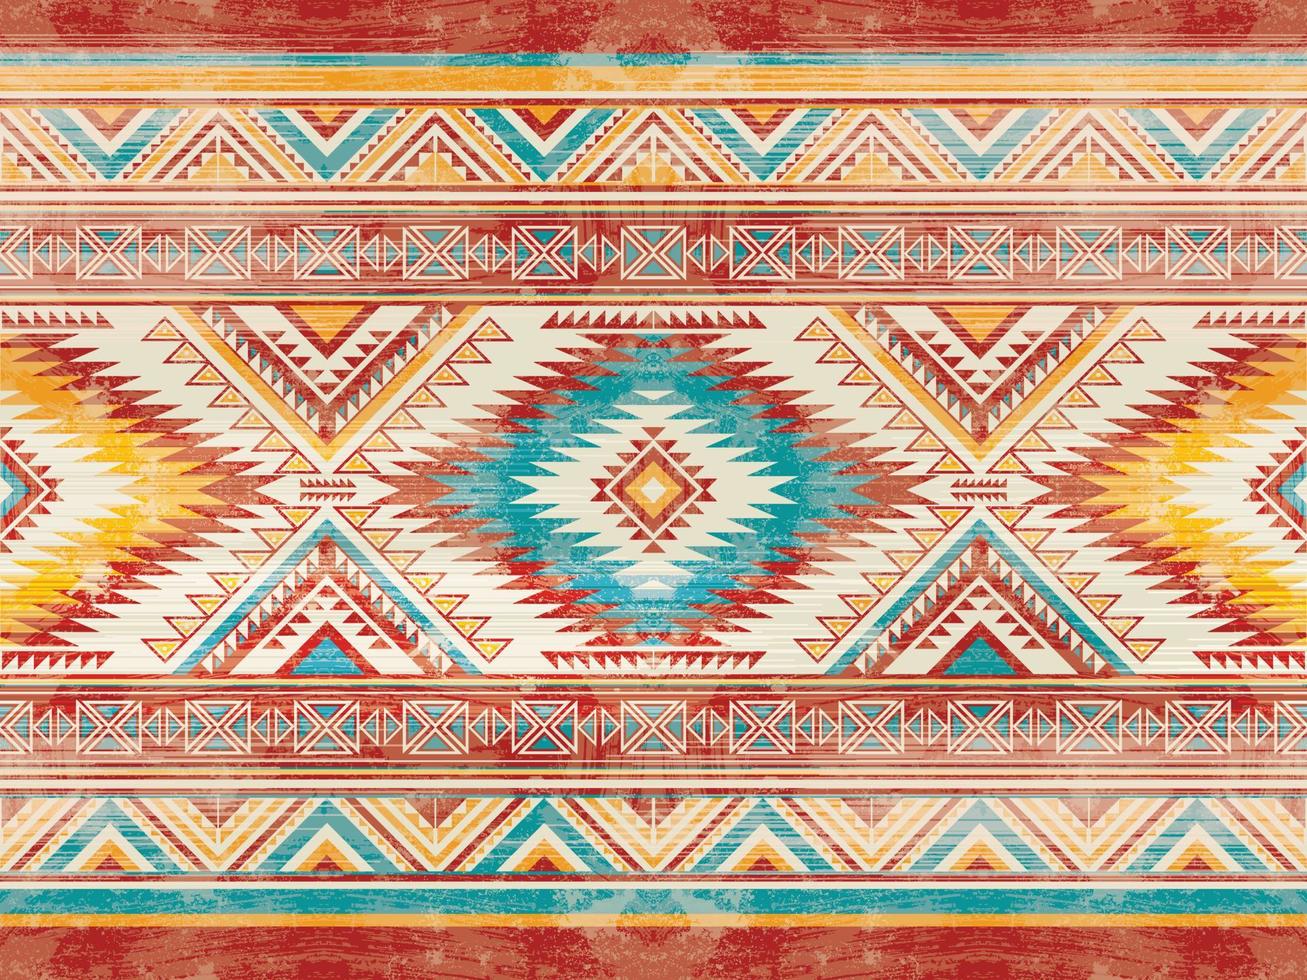 gebürtige indianische Ornamentmuster geometrische ethnische Textilbeschaffenheit Stammes- aztekisches Muster Navajo mexikanischer Stoff nahtlose Vektordekoration Mode vektor